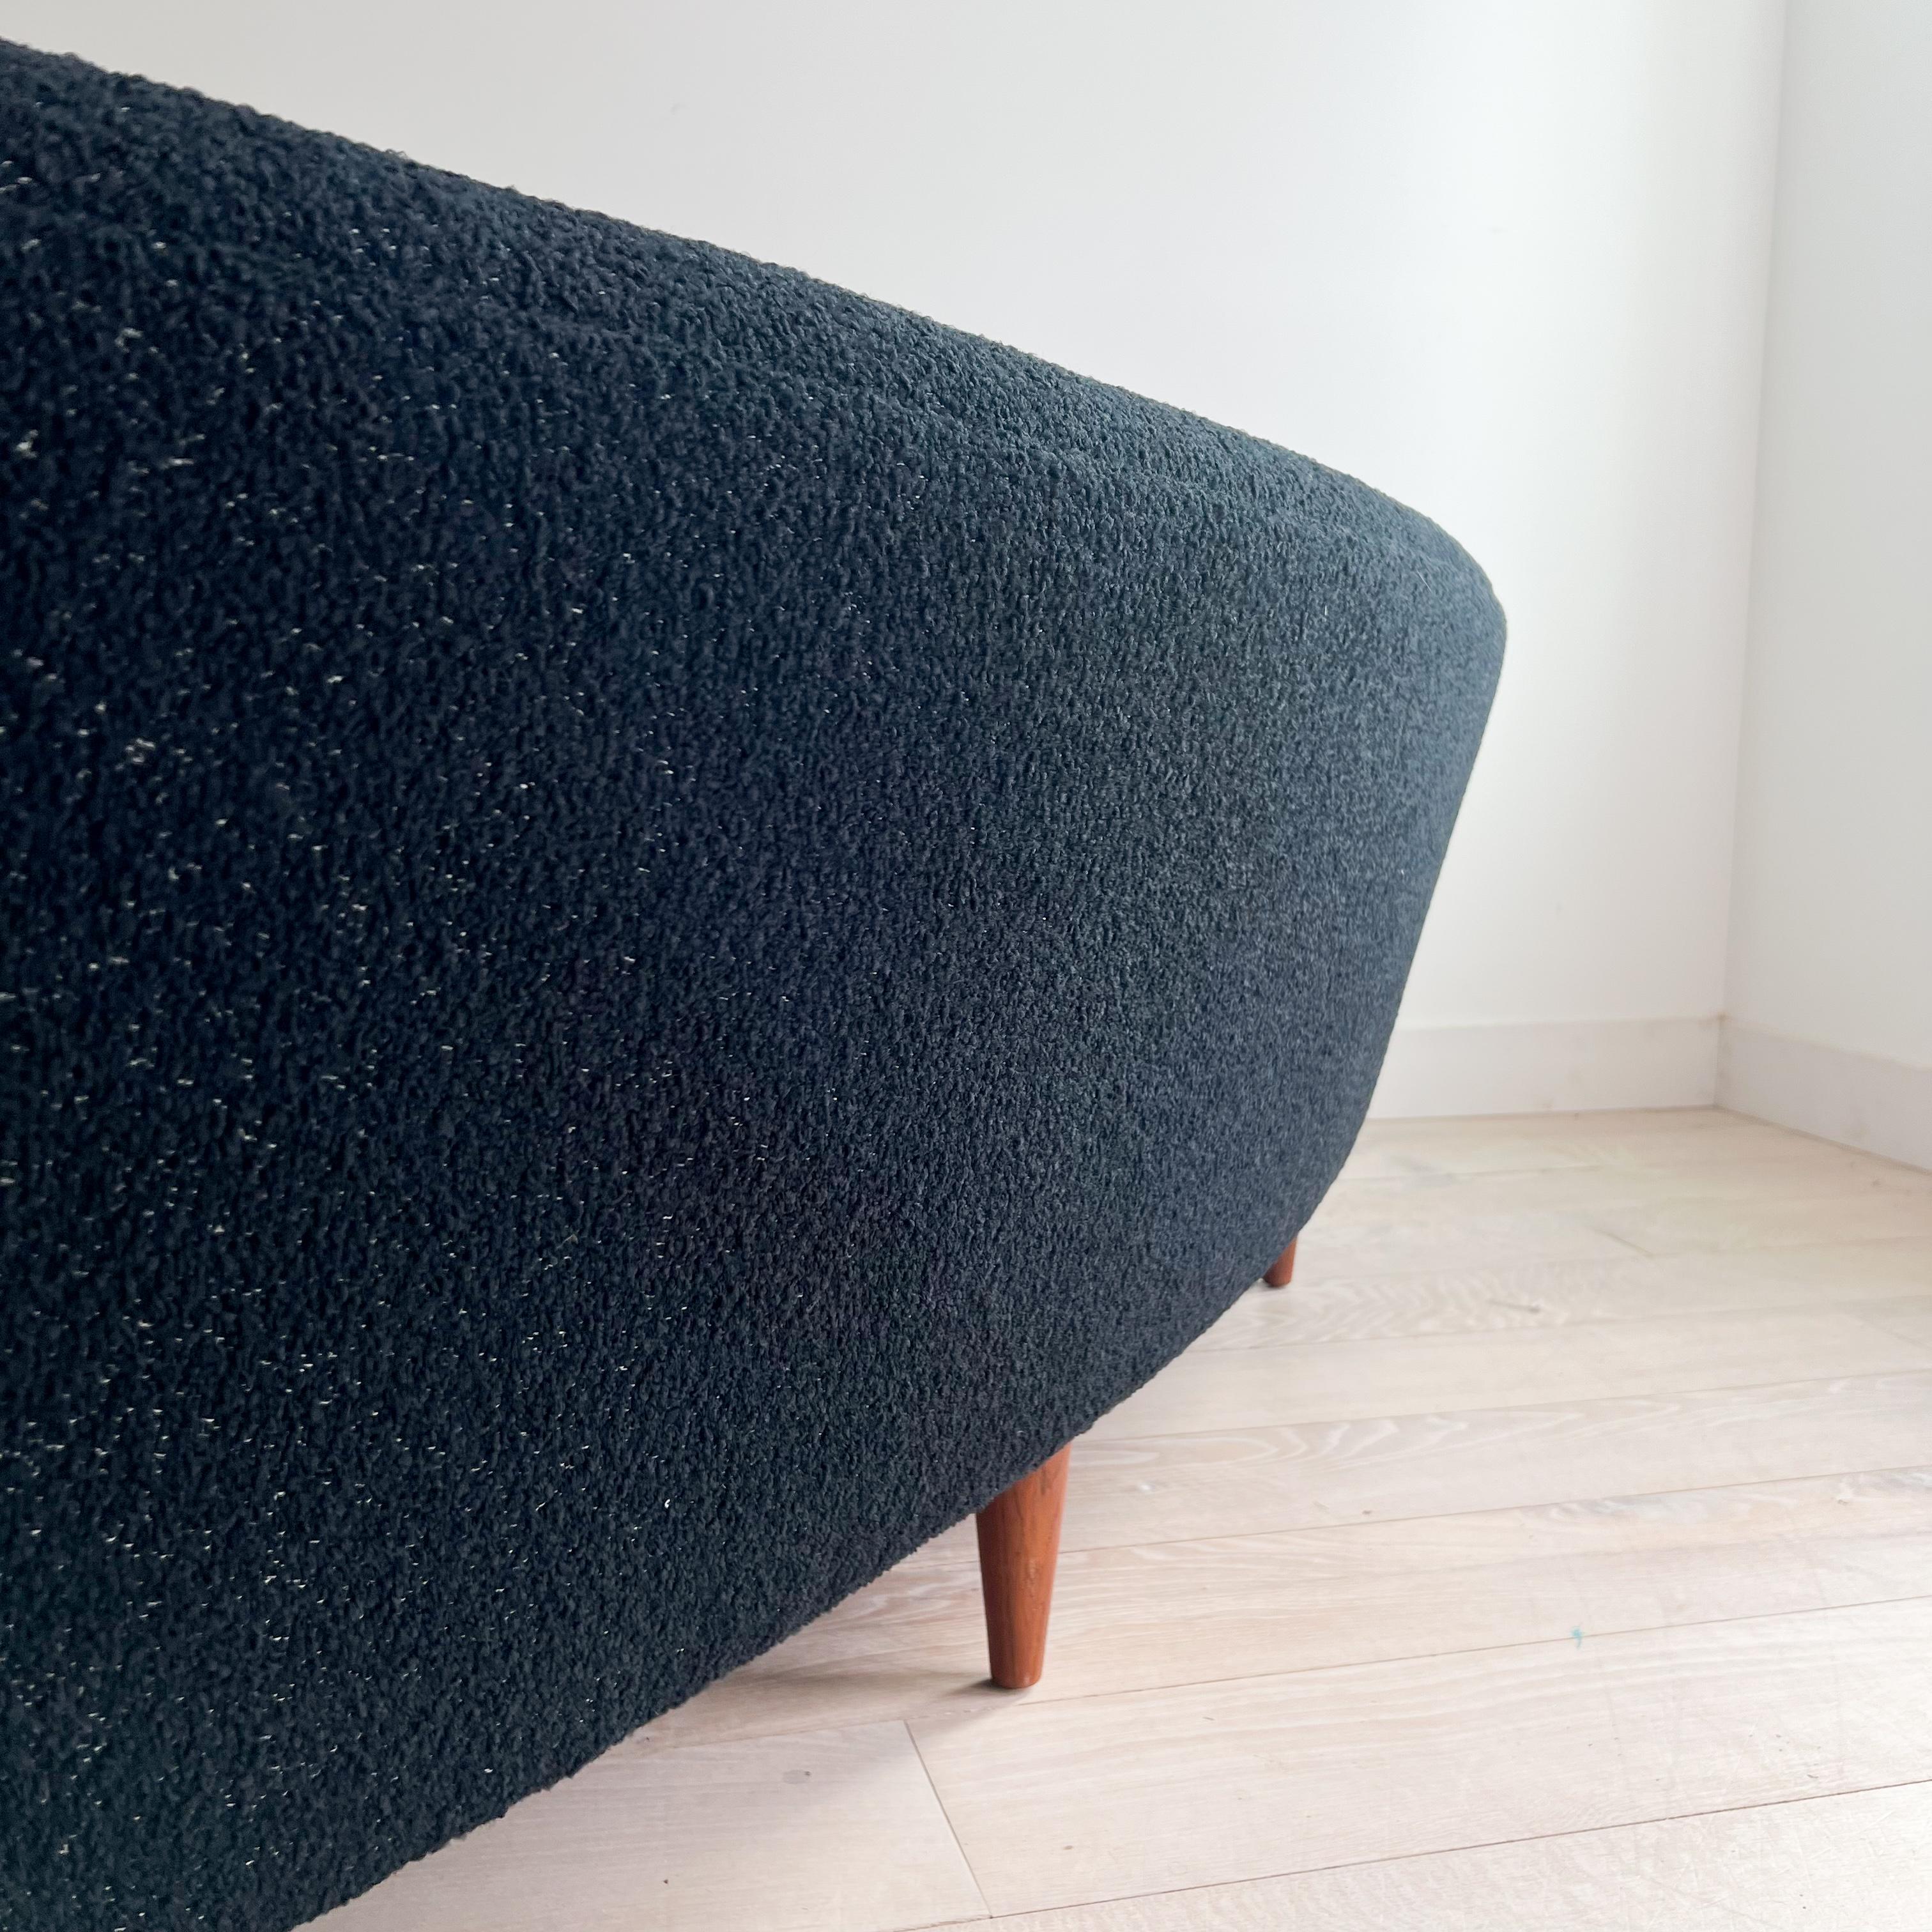 Illum Wikkelso's Rare Banana Curved Sofa - Model 450 - New Upholstery 12